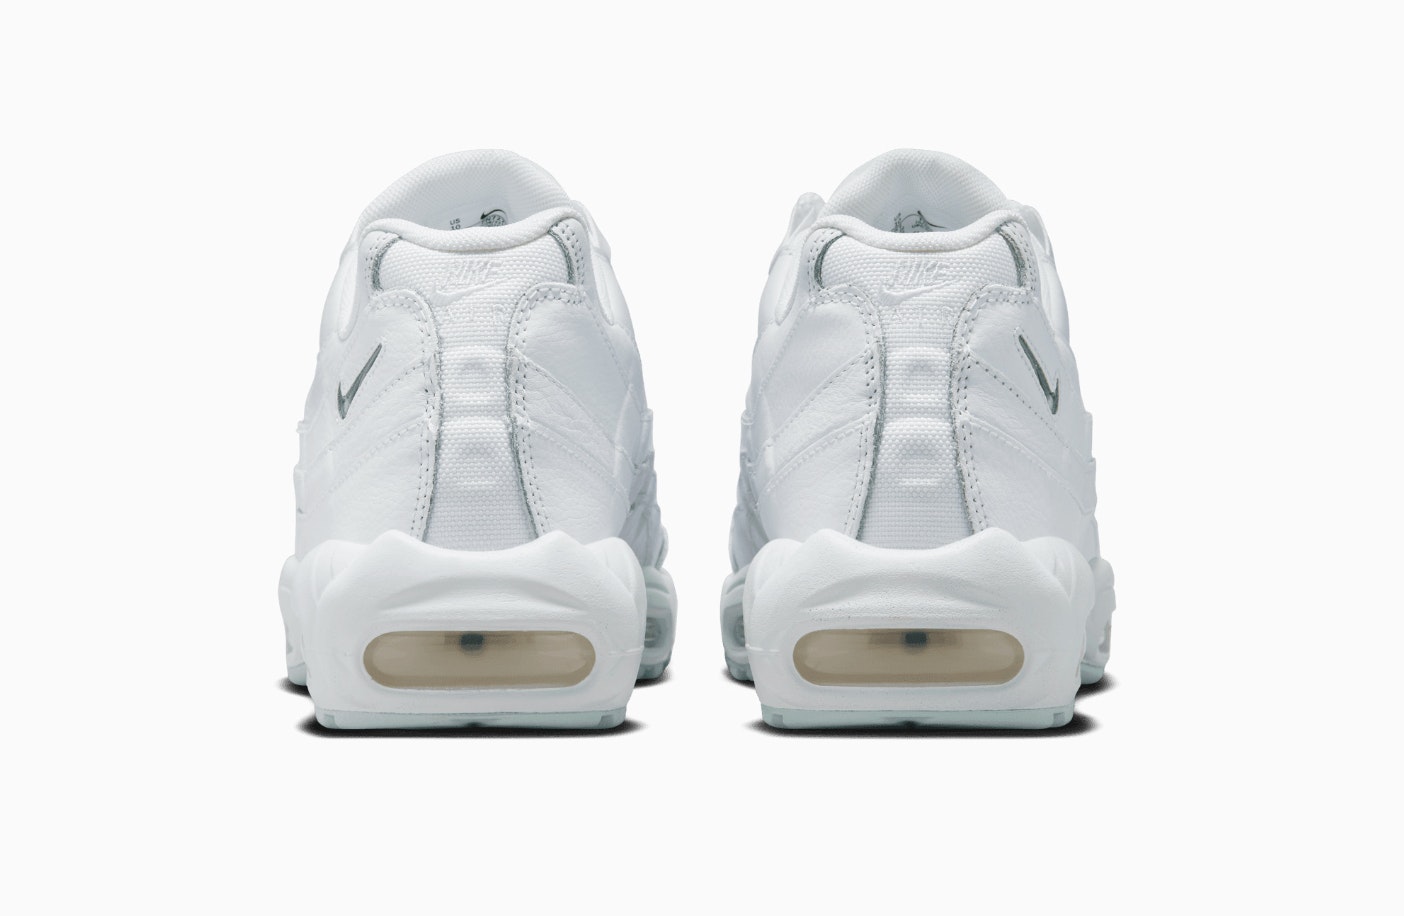 Nike Air Max 95 "White Jewel"